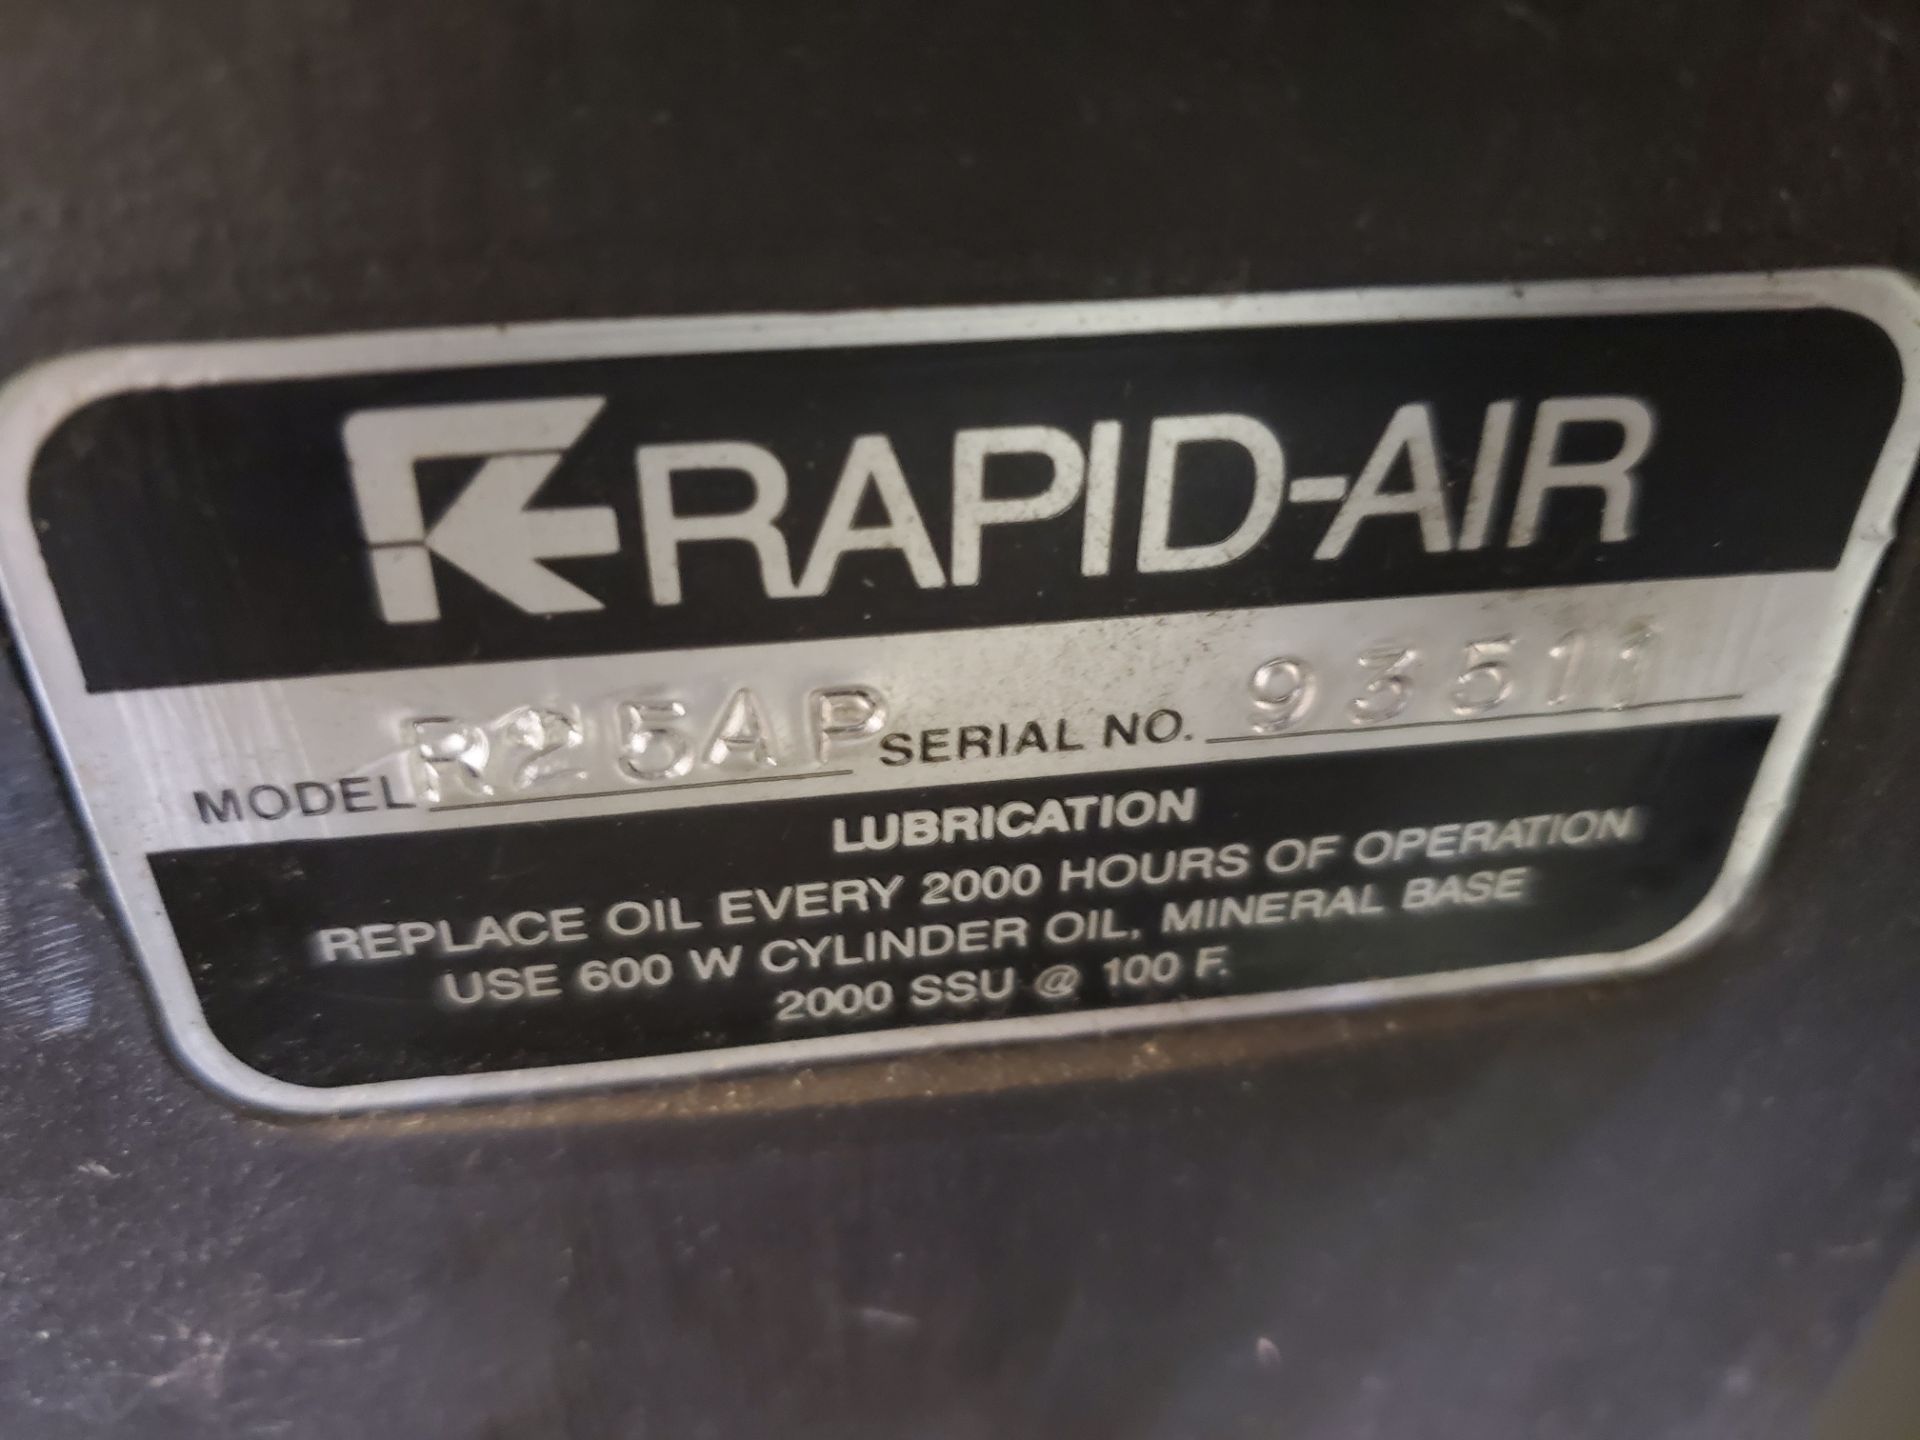 Airco Rapid Air Model R25AP, 75 lb. Capacity - Image 2 of 3